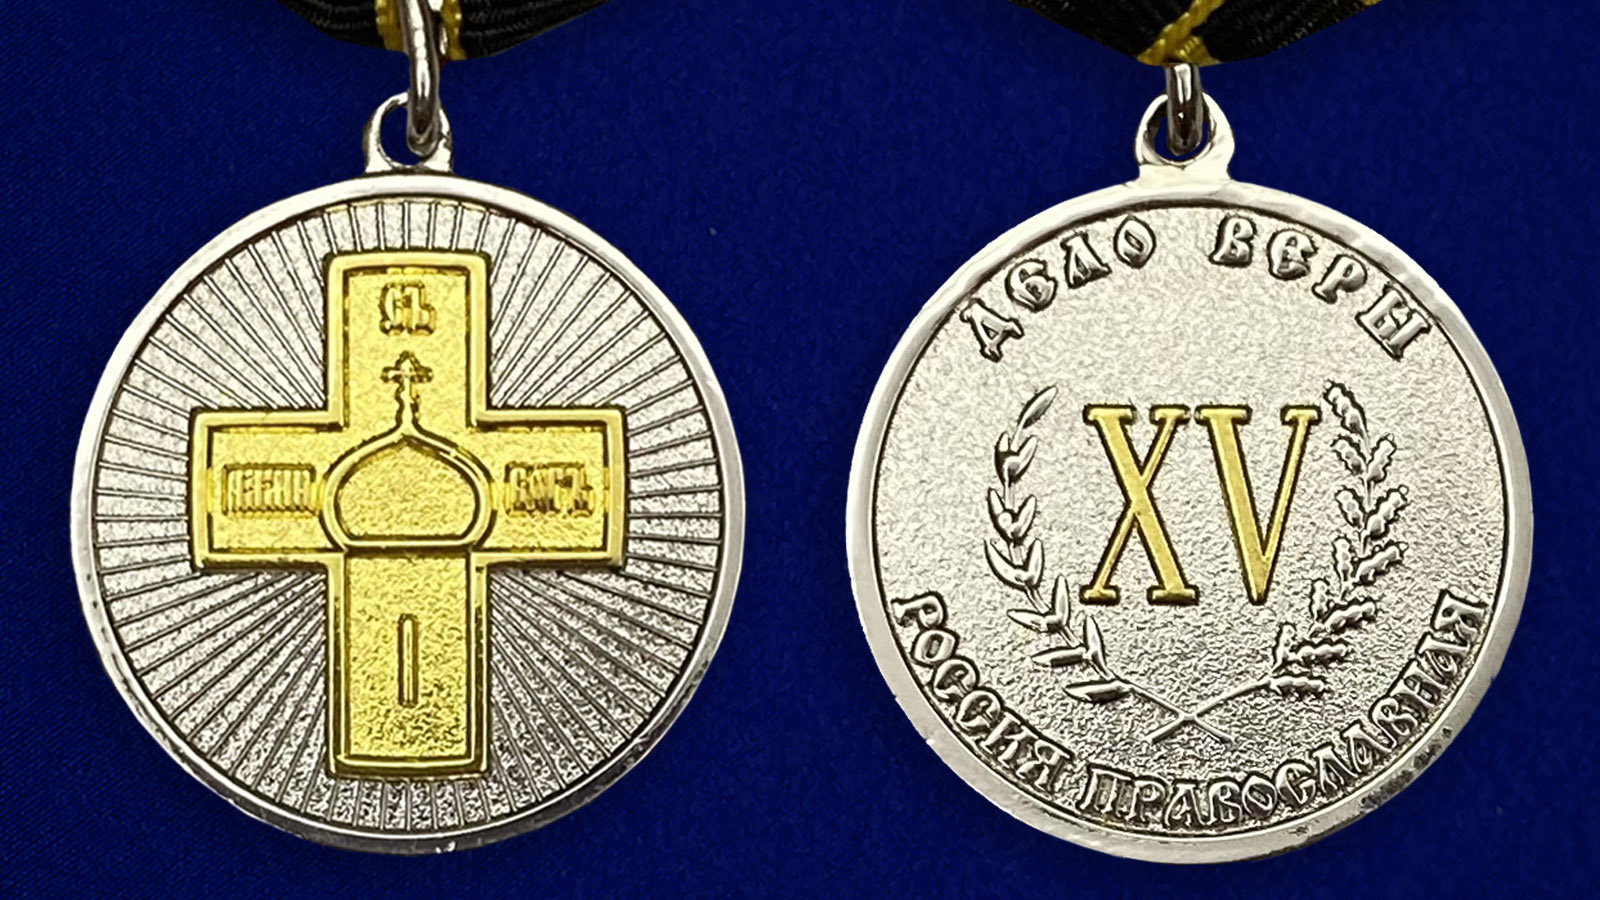 Медаль Дело Веры 2 степени по приемлемой цене